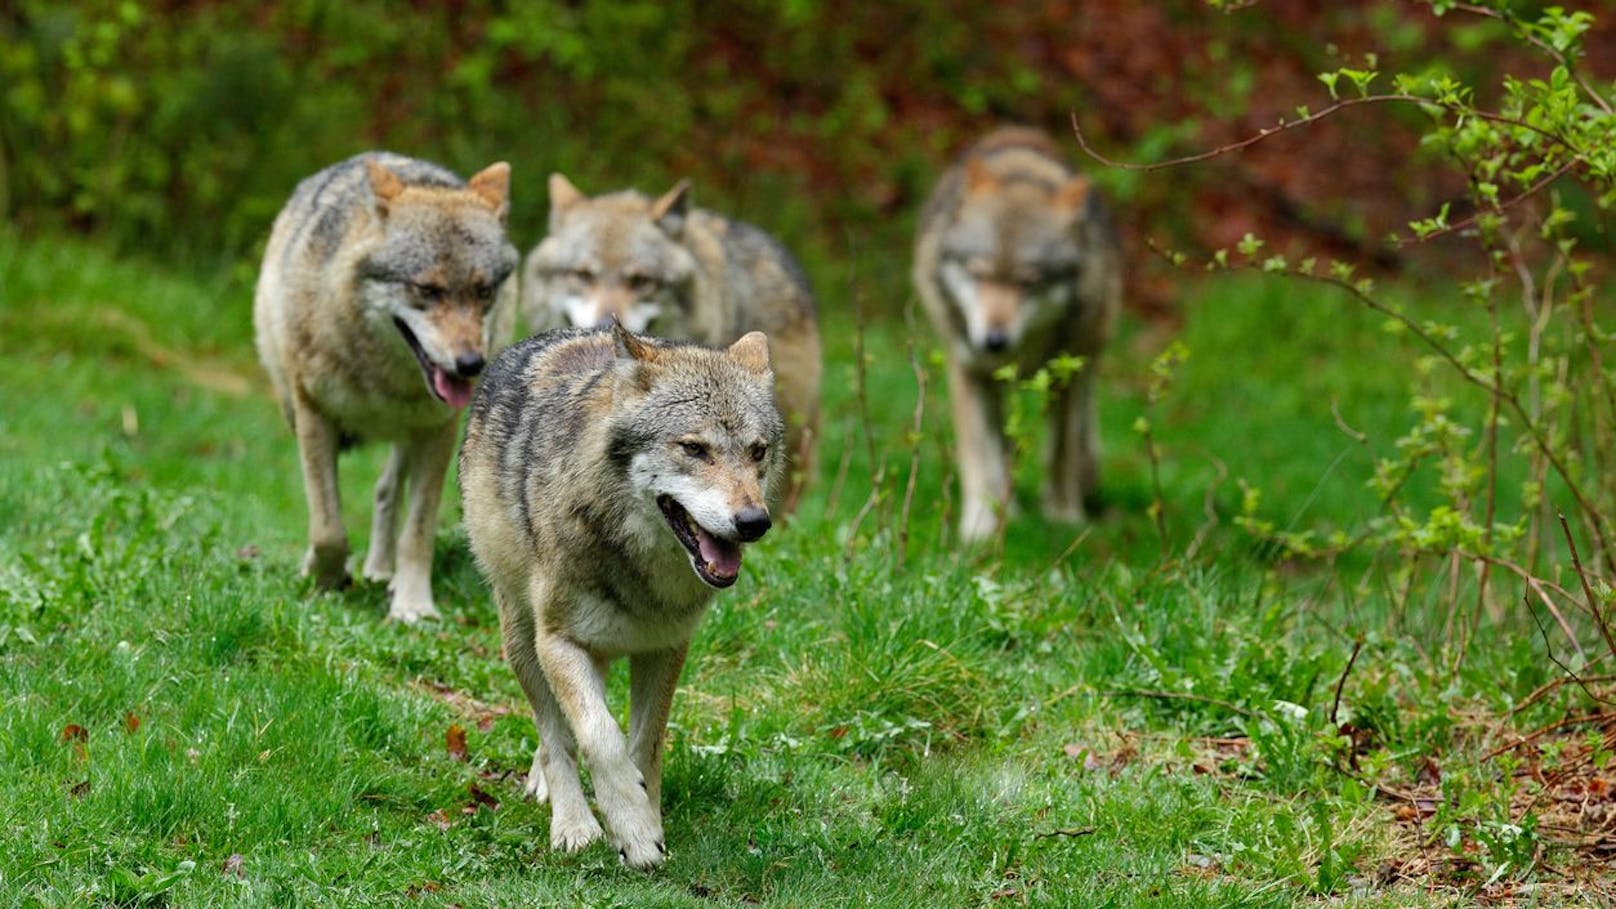 Verein aus NÖ warnt: "Wölfe töten Kinder"